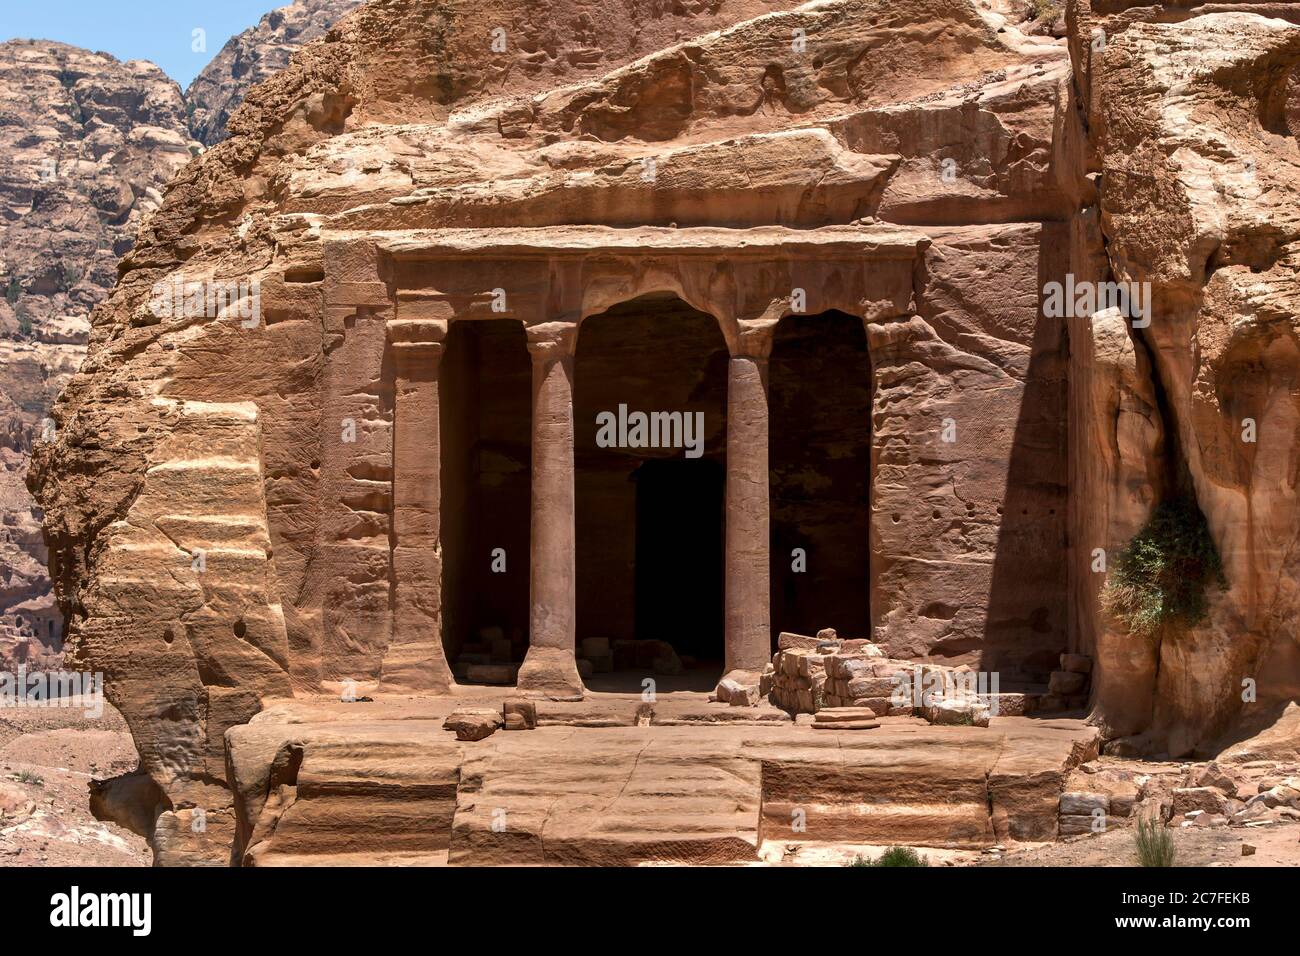 Les ruines de la salle du jardin qui date de 200 avant JC à 200 après J.-C. Il est situé sur la route de Wadi Al Farasa à Petra en Jordanie. Banque D'Images